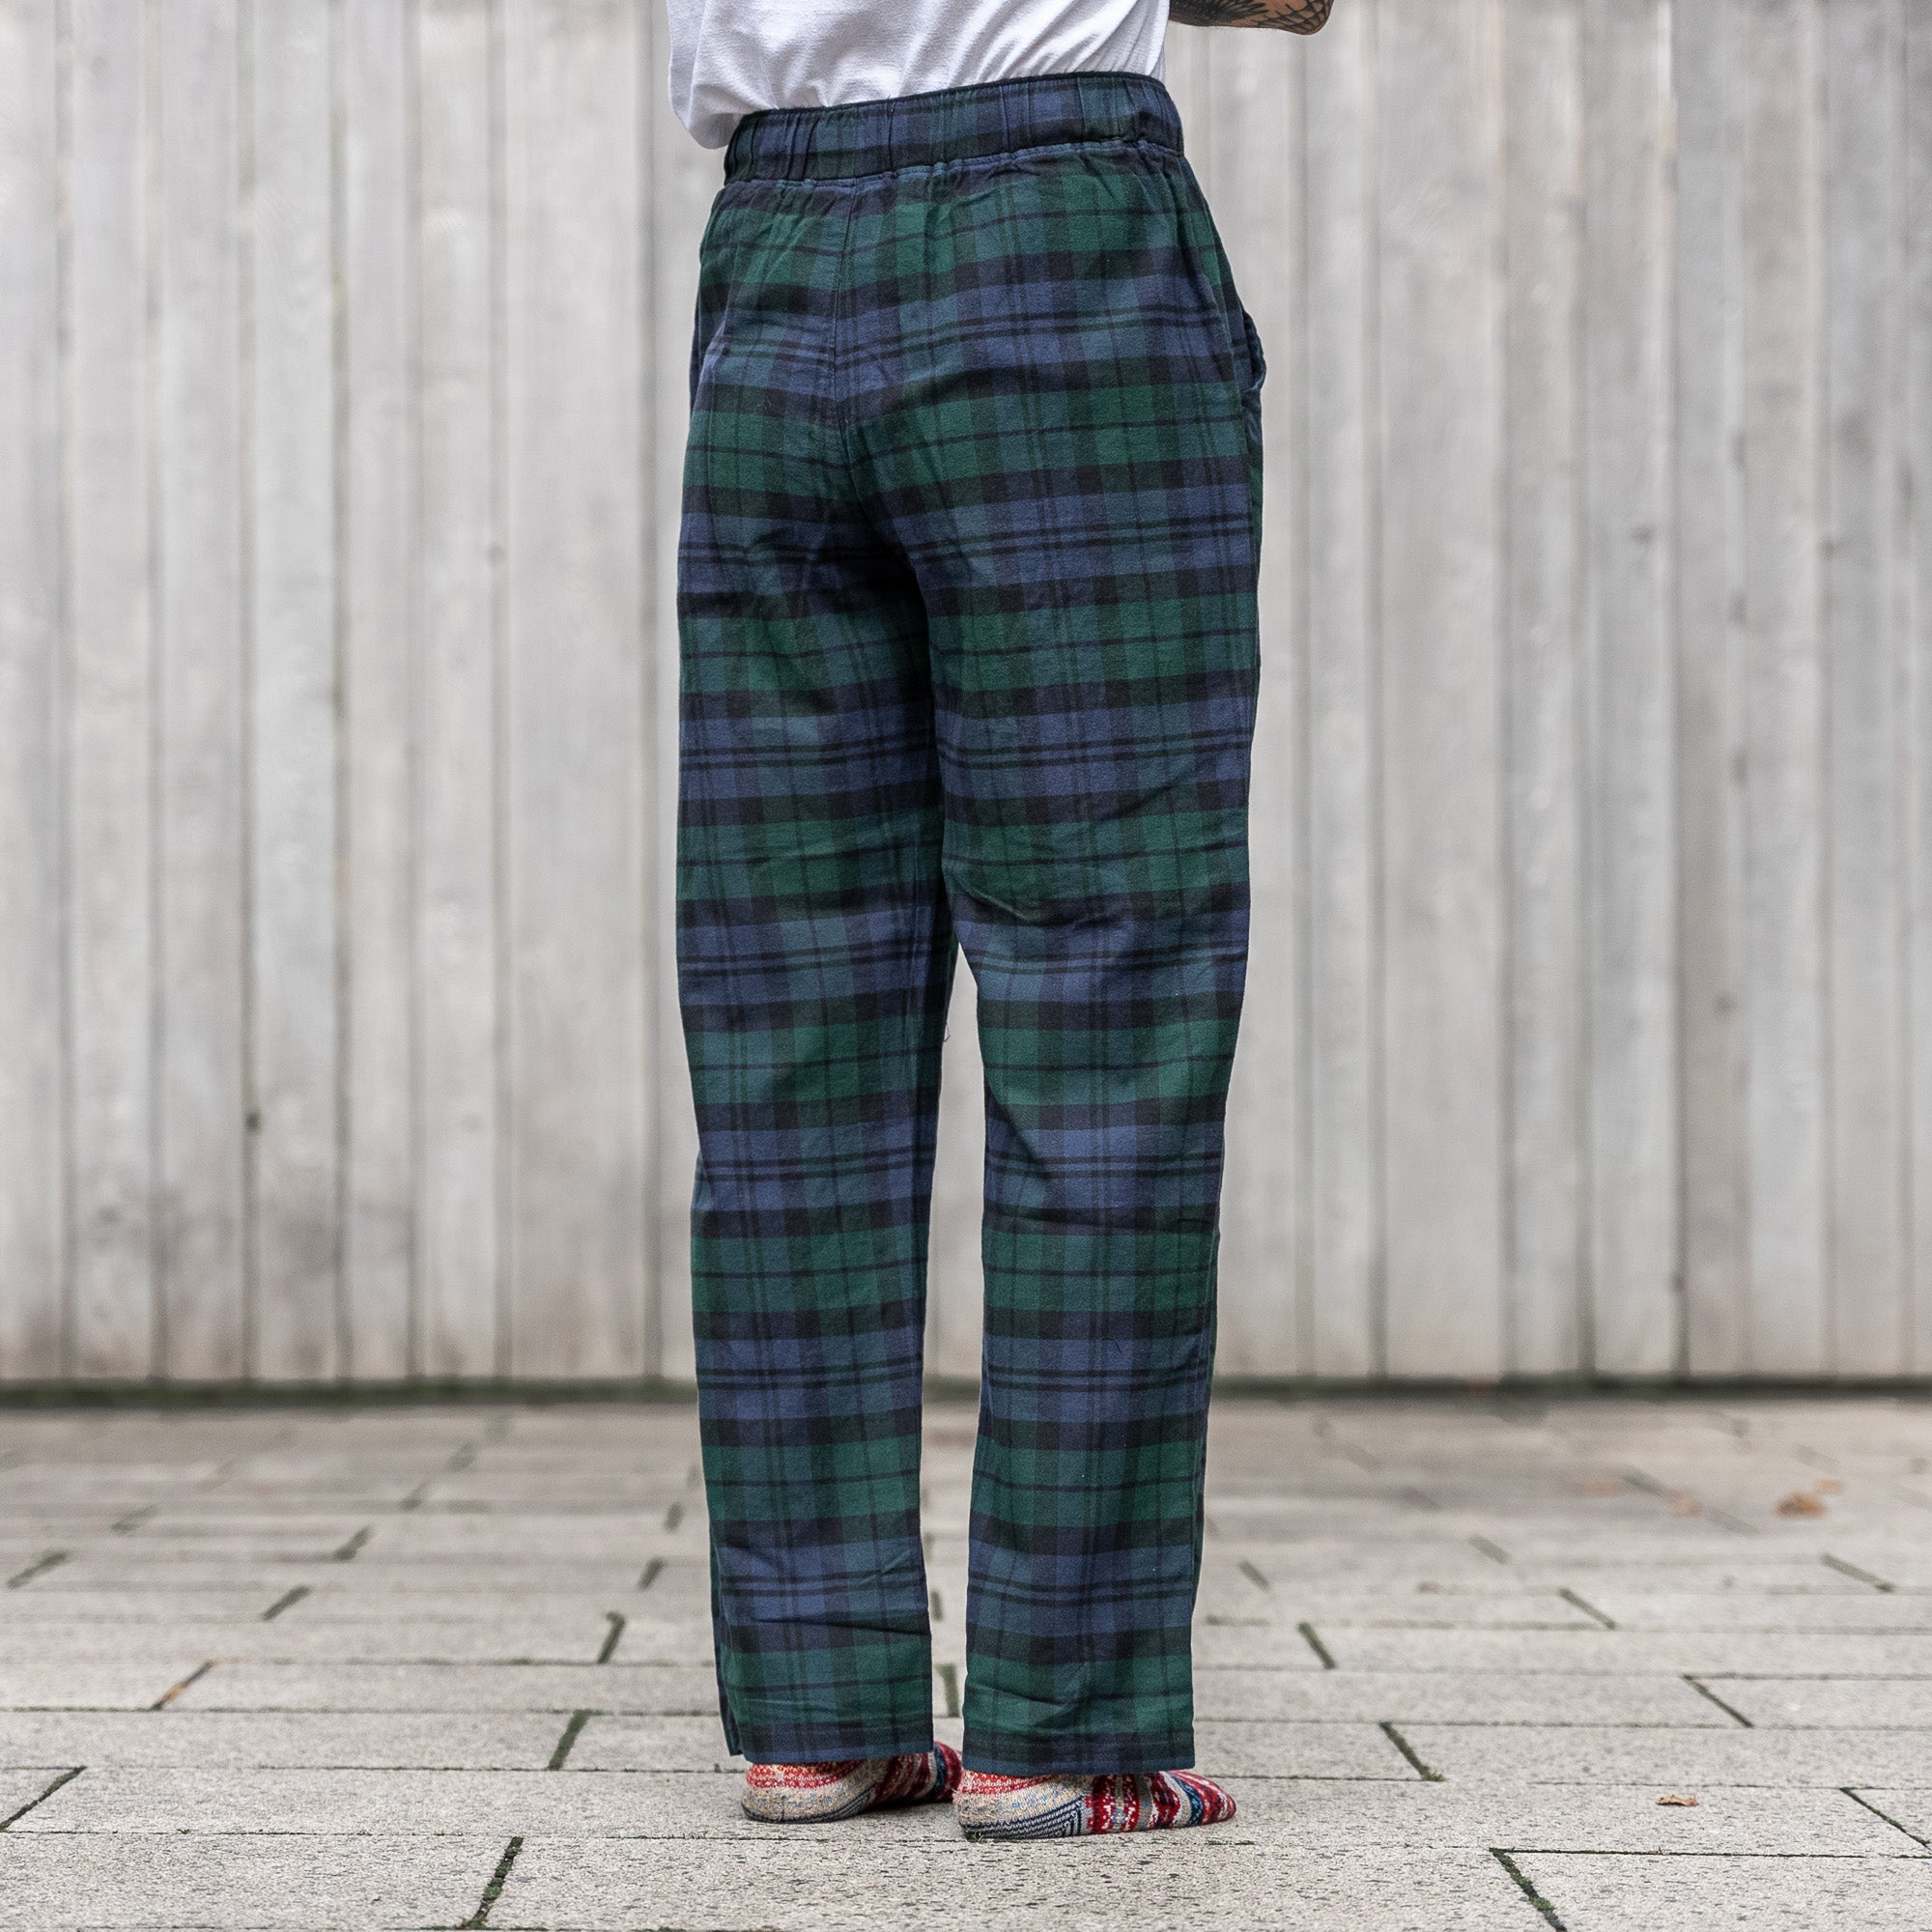 Regular Fit Pajama Pants - Dark green/plaid - Men